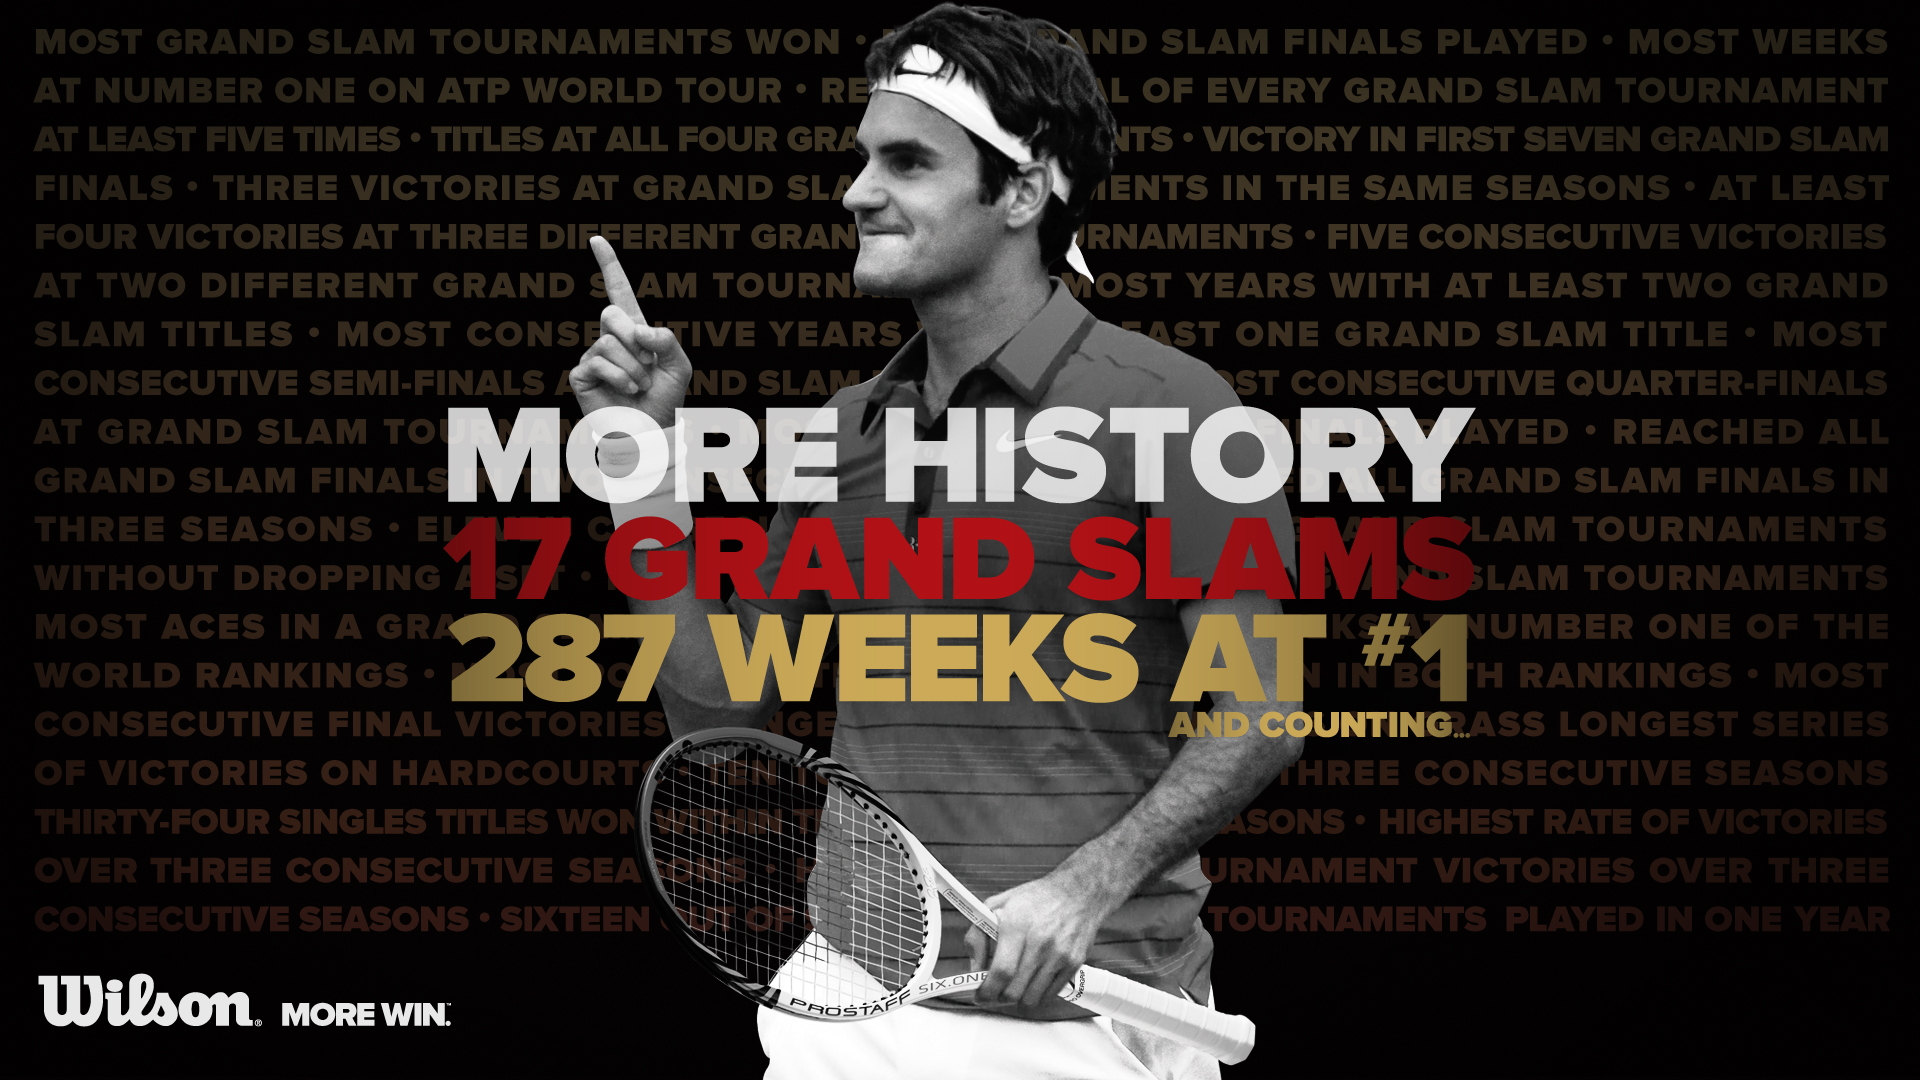 Roger Federer HD Quality Background Image